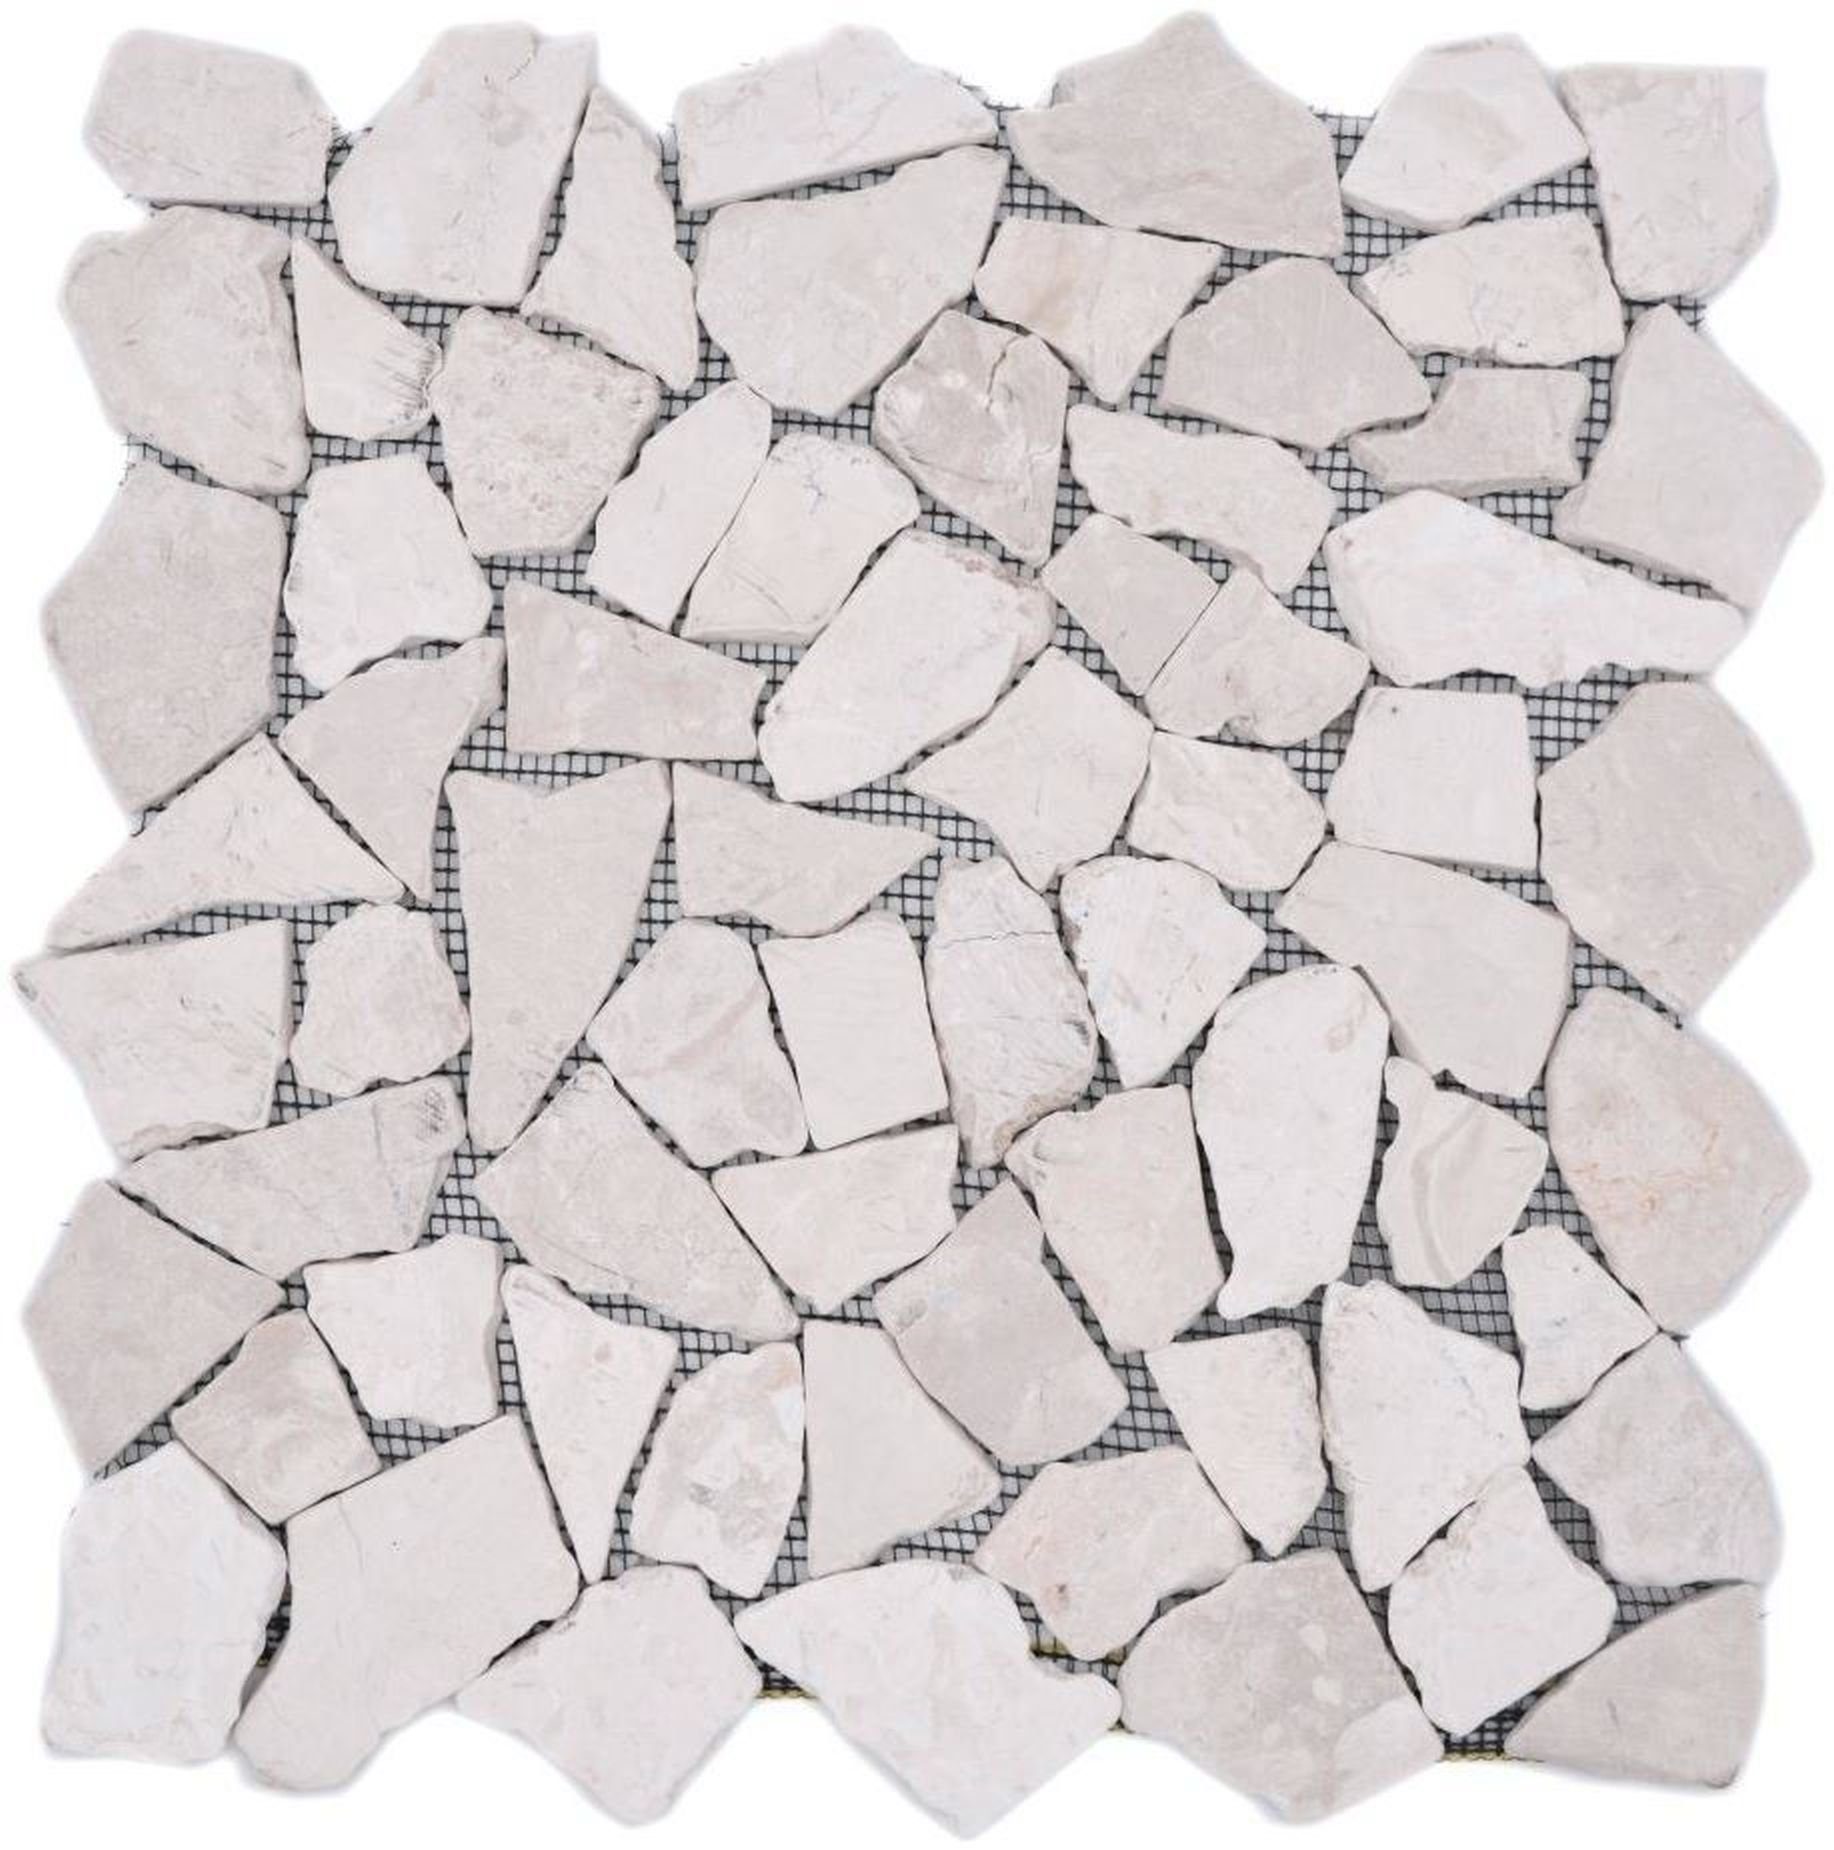 Mosani Bodenfliese Mosaik Bruch Marmor Naturstein hellbeige elfenbein Polygonal